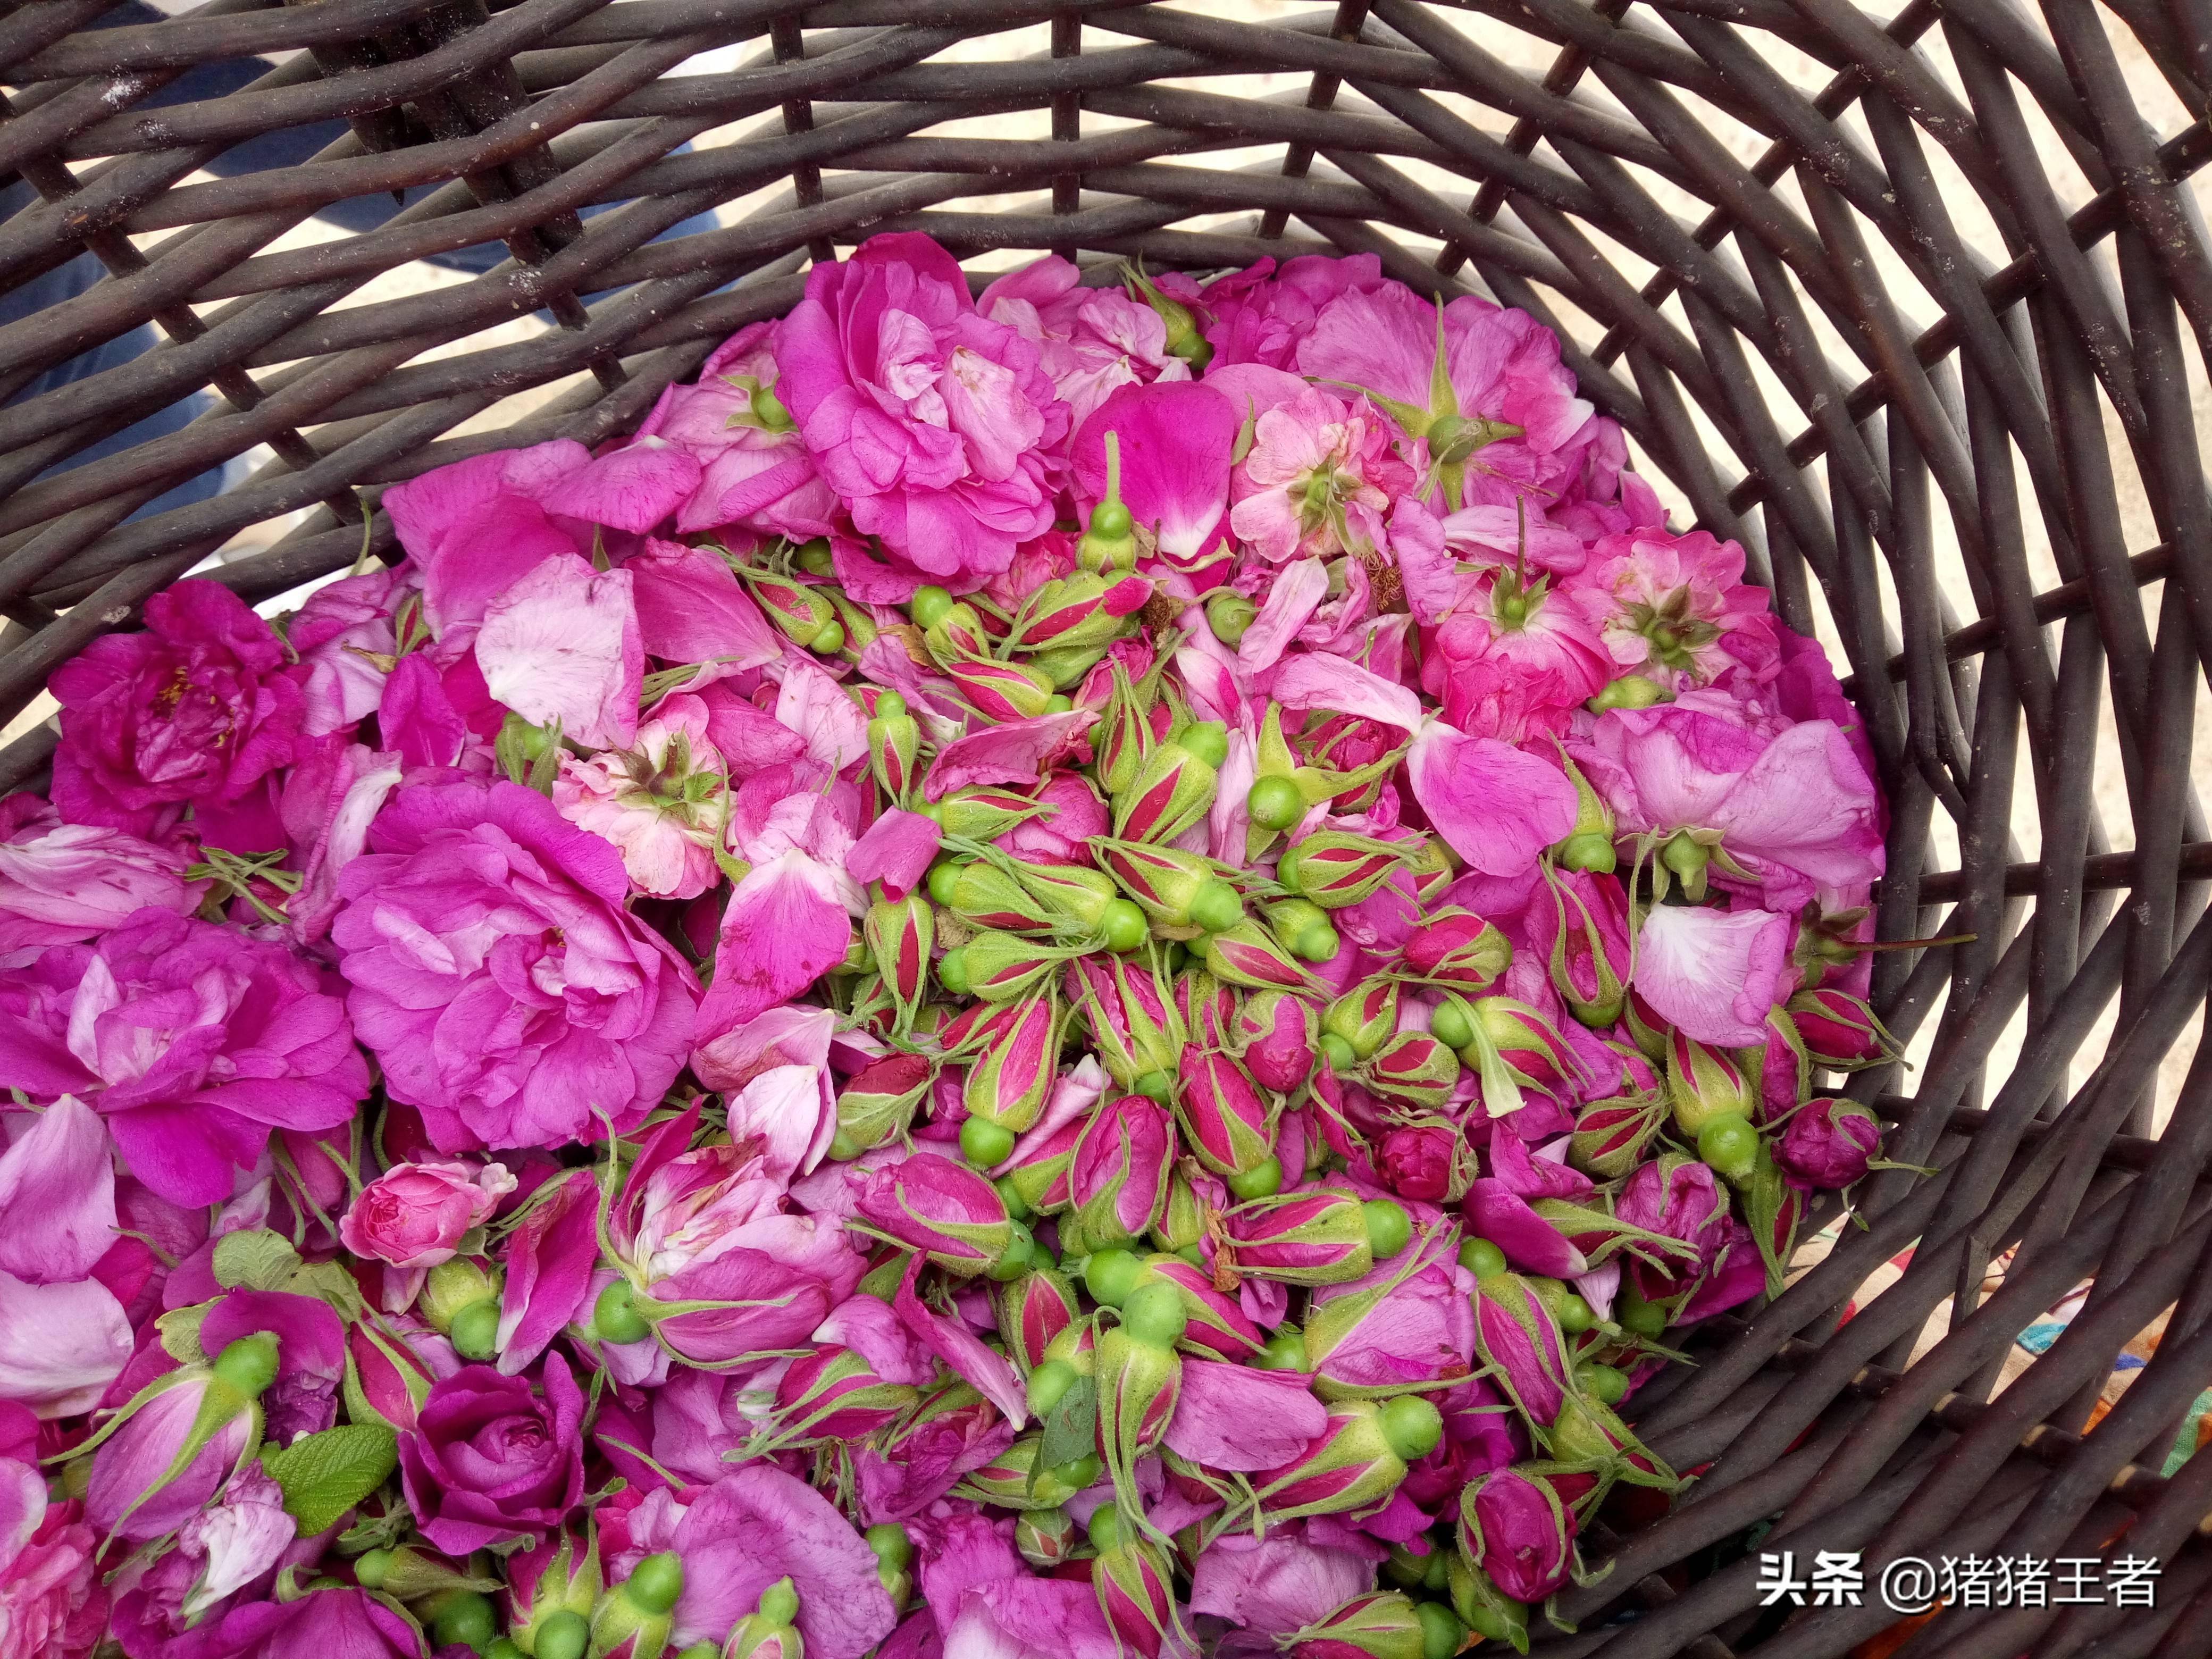 可食用的玫瑰花瓣采摘一些回家做成玫瑰花酱想吃就来吧